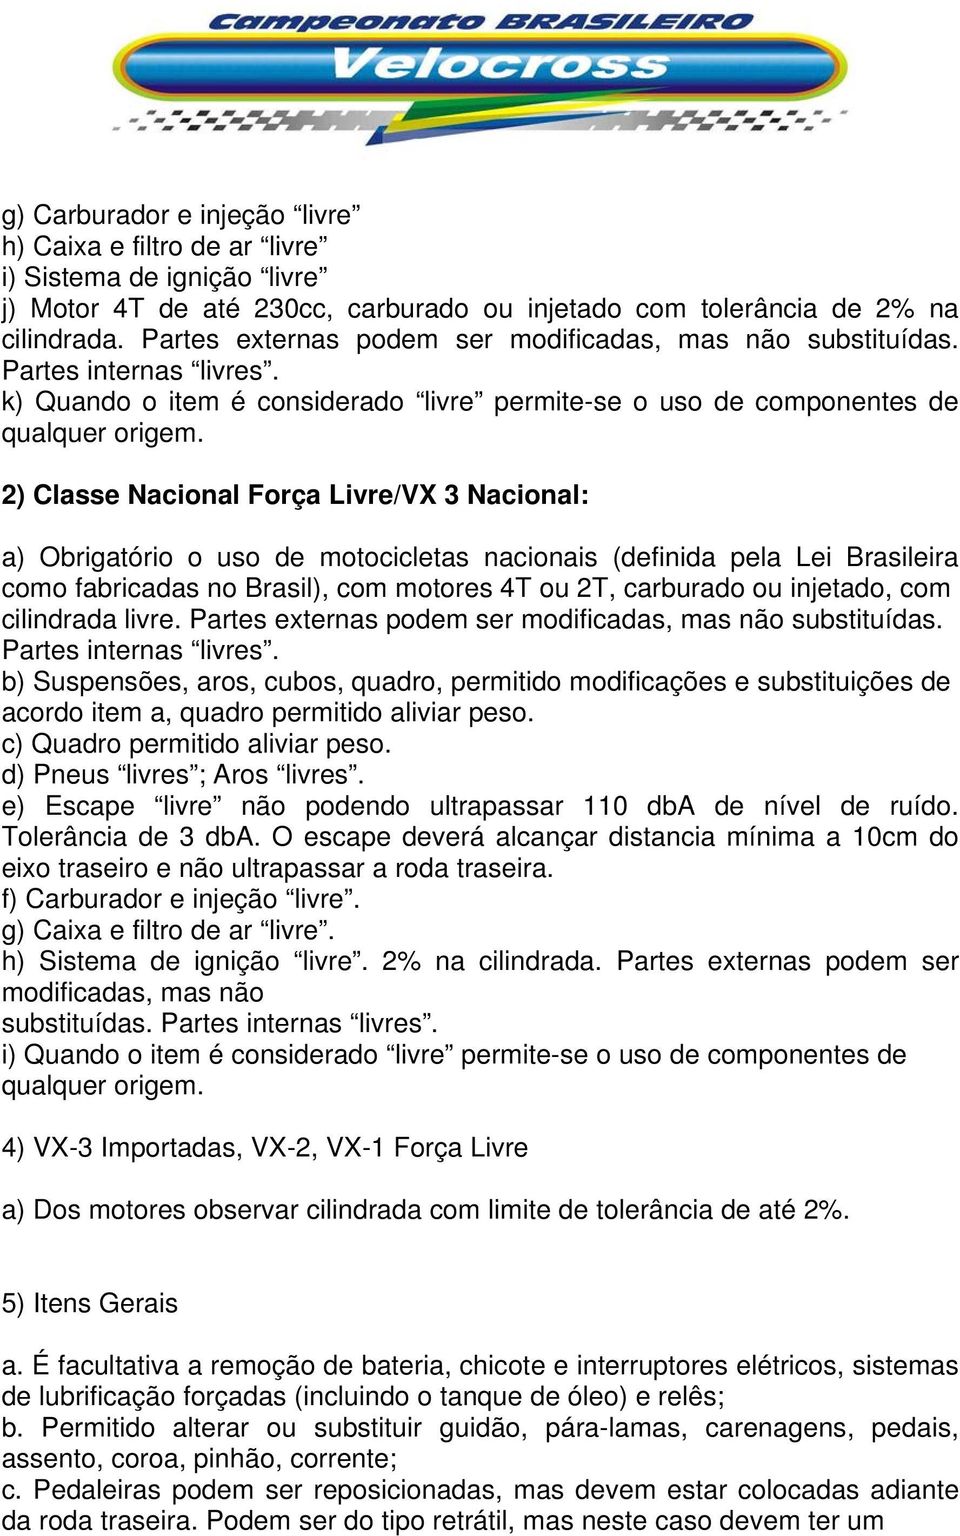 2) Classe Nacional Força Livre/VX 3 Nacional: a) Obrigatório o uso de motocicletas nacionais (definida pela Lei Brasileira como fabricadas no Brasil), com motores 4T ou 2T, carburado ou injetado, com